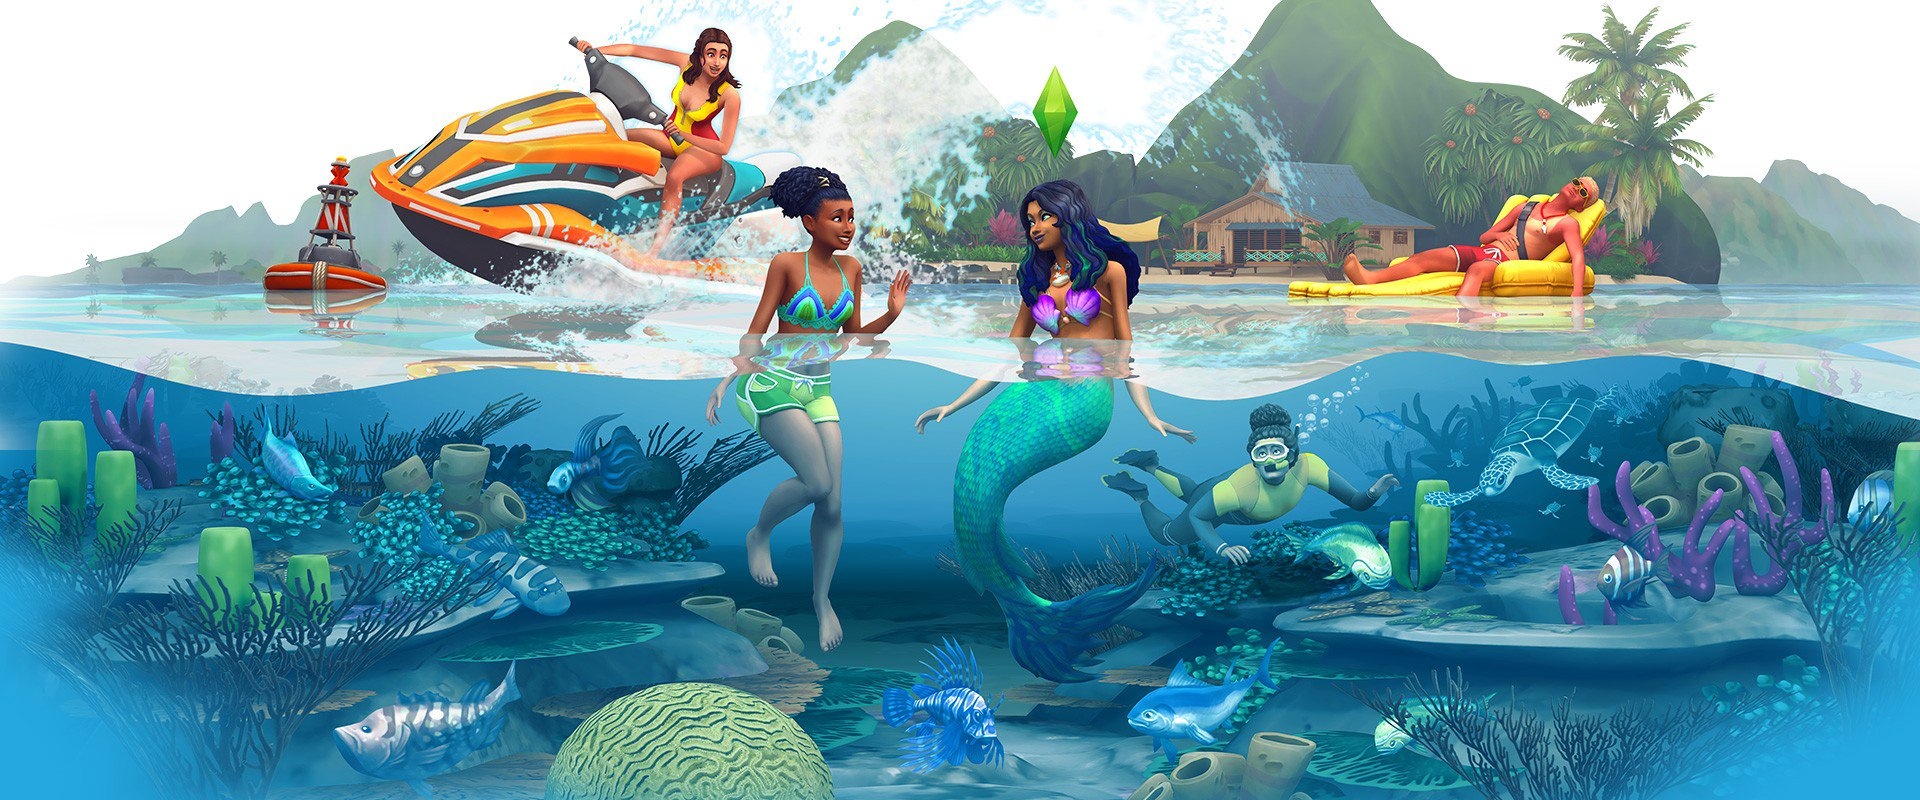 К The Sims 4 выйдет дополнение Island Living